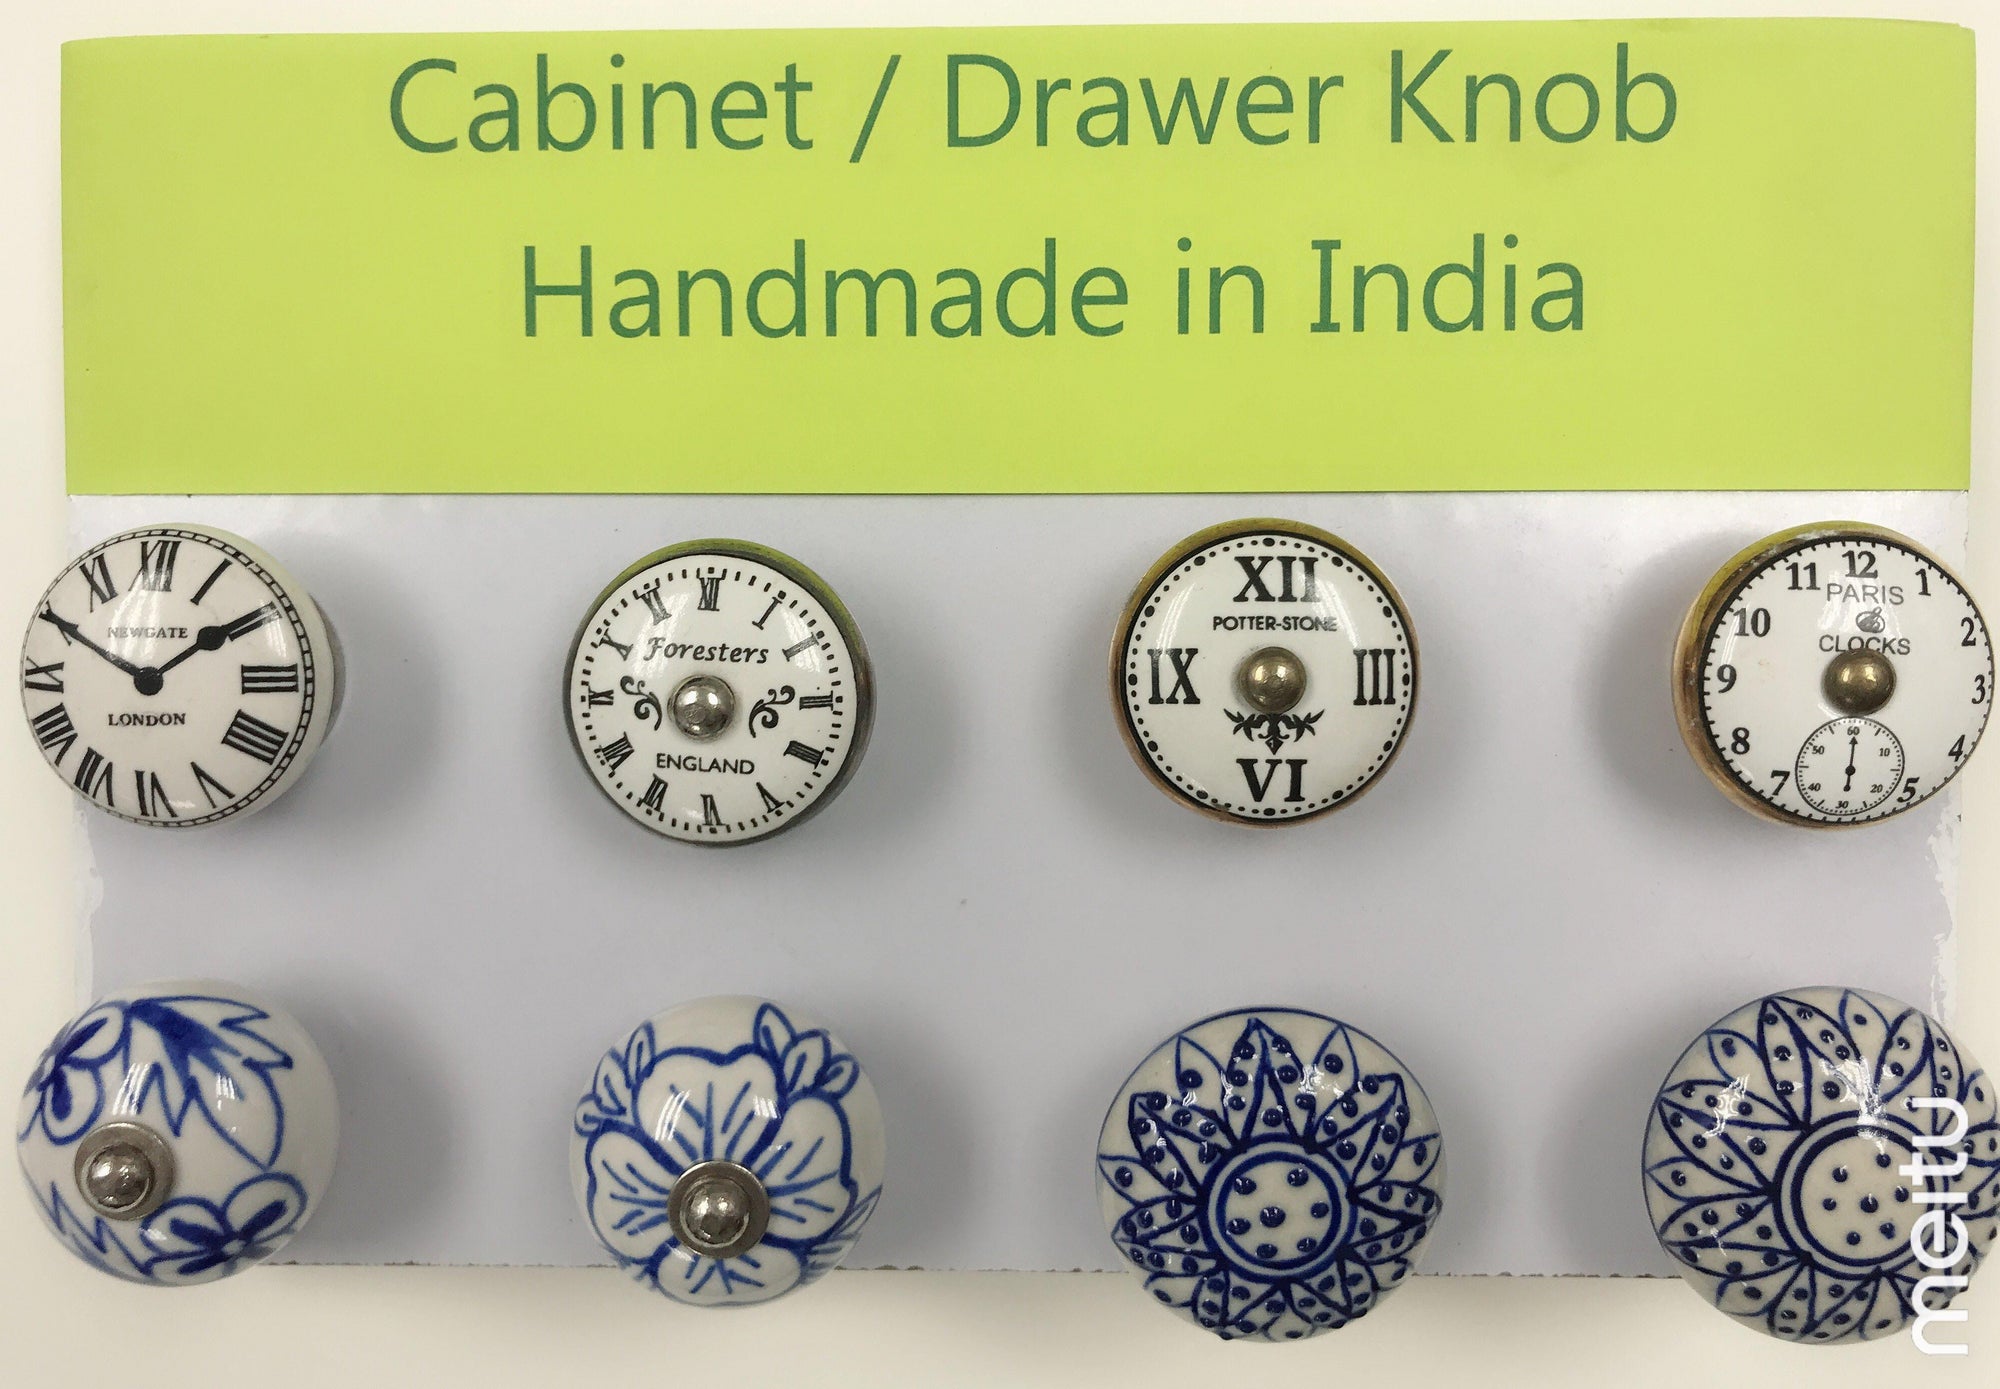 Vintage Knob- Cabinet / Drawer